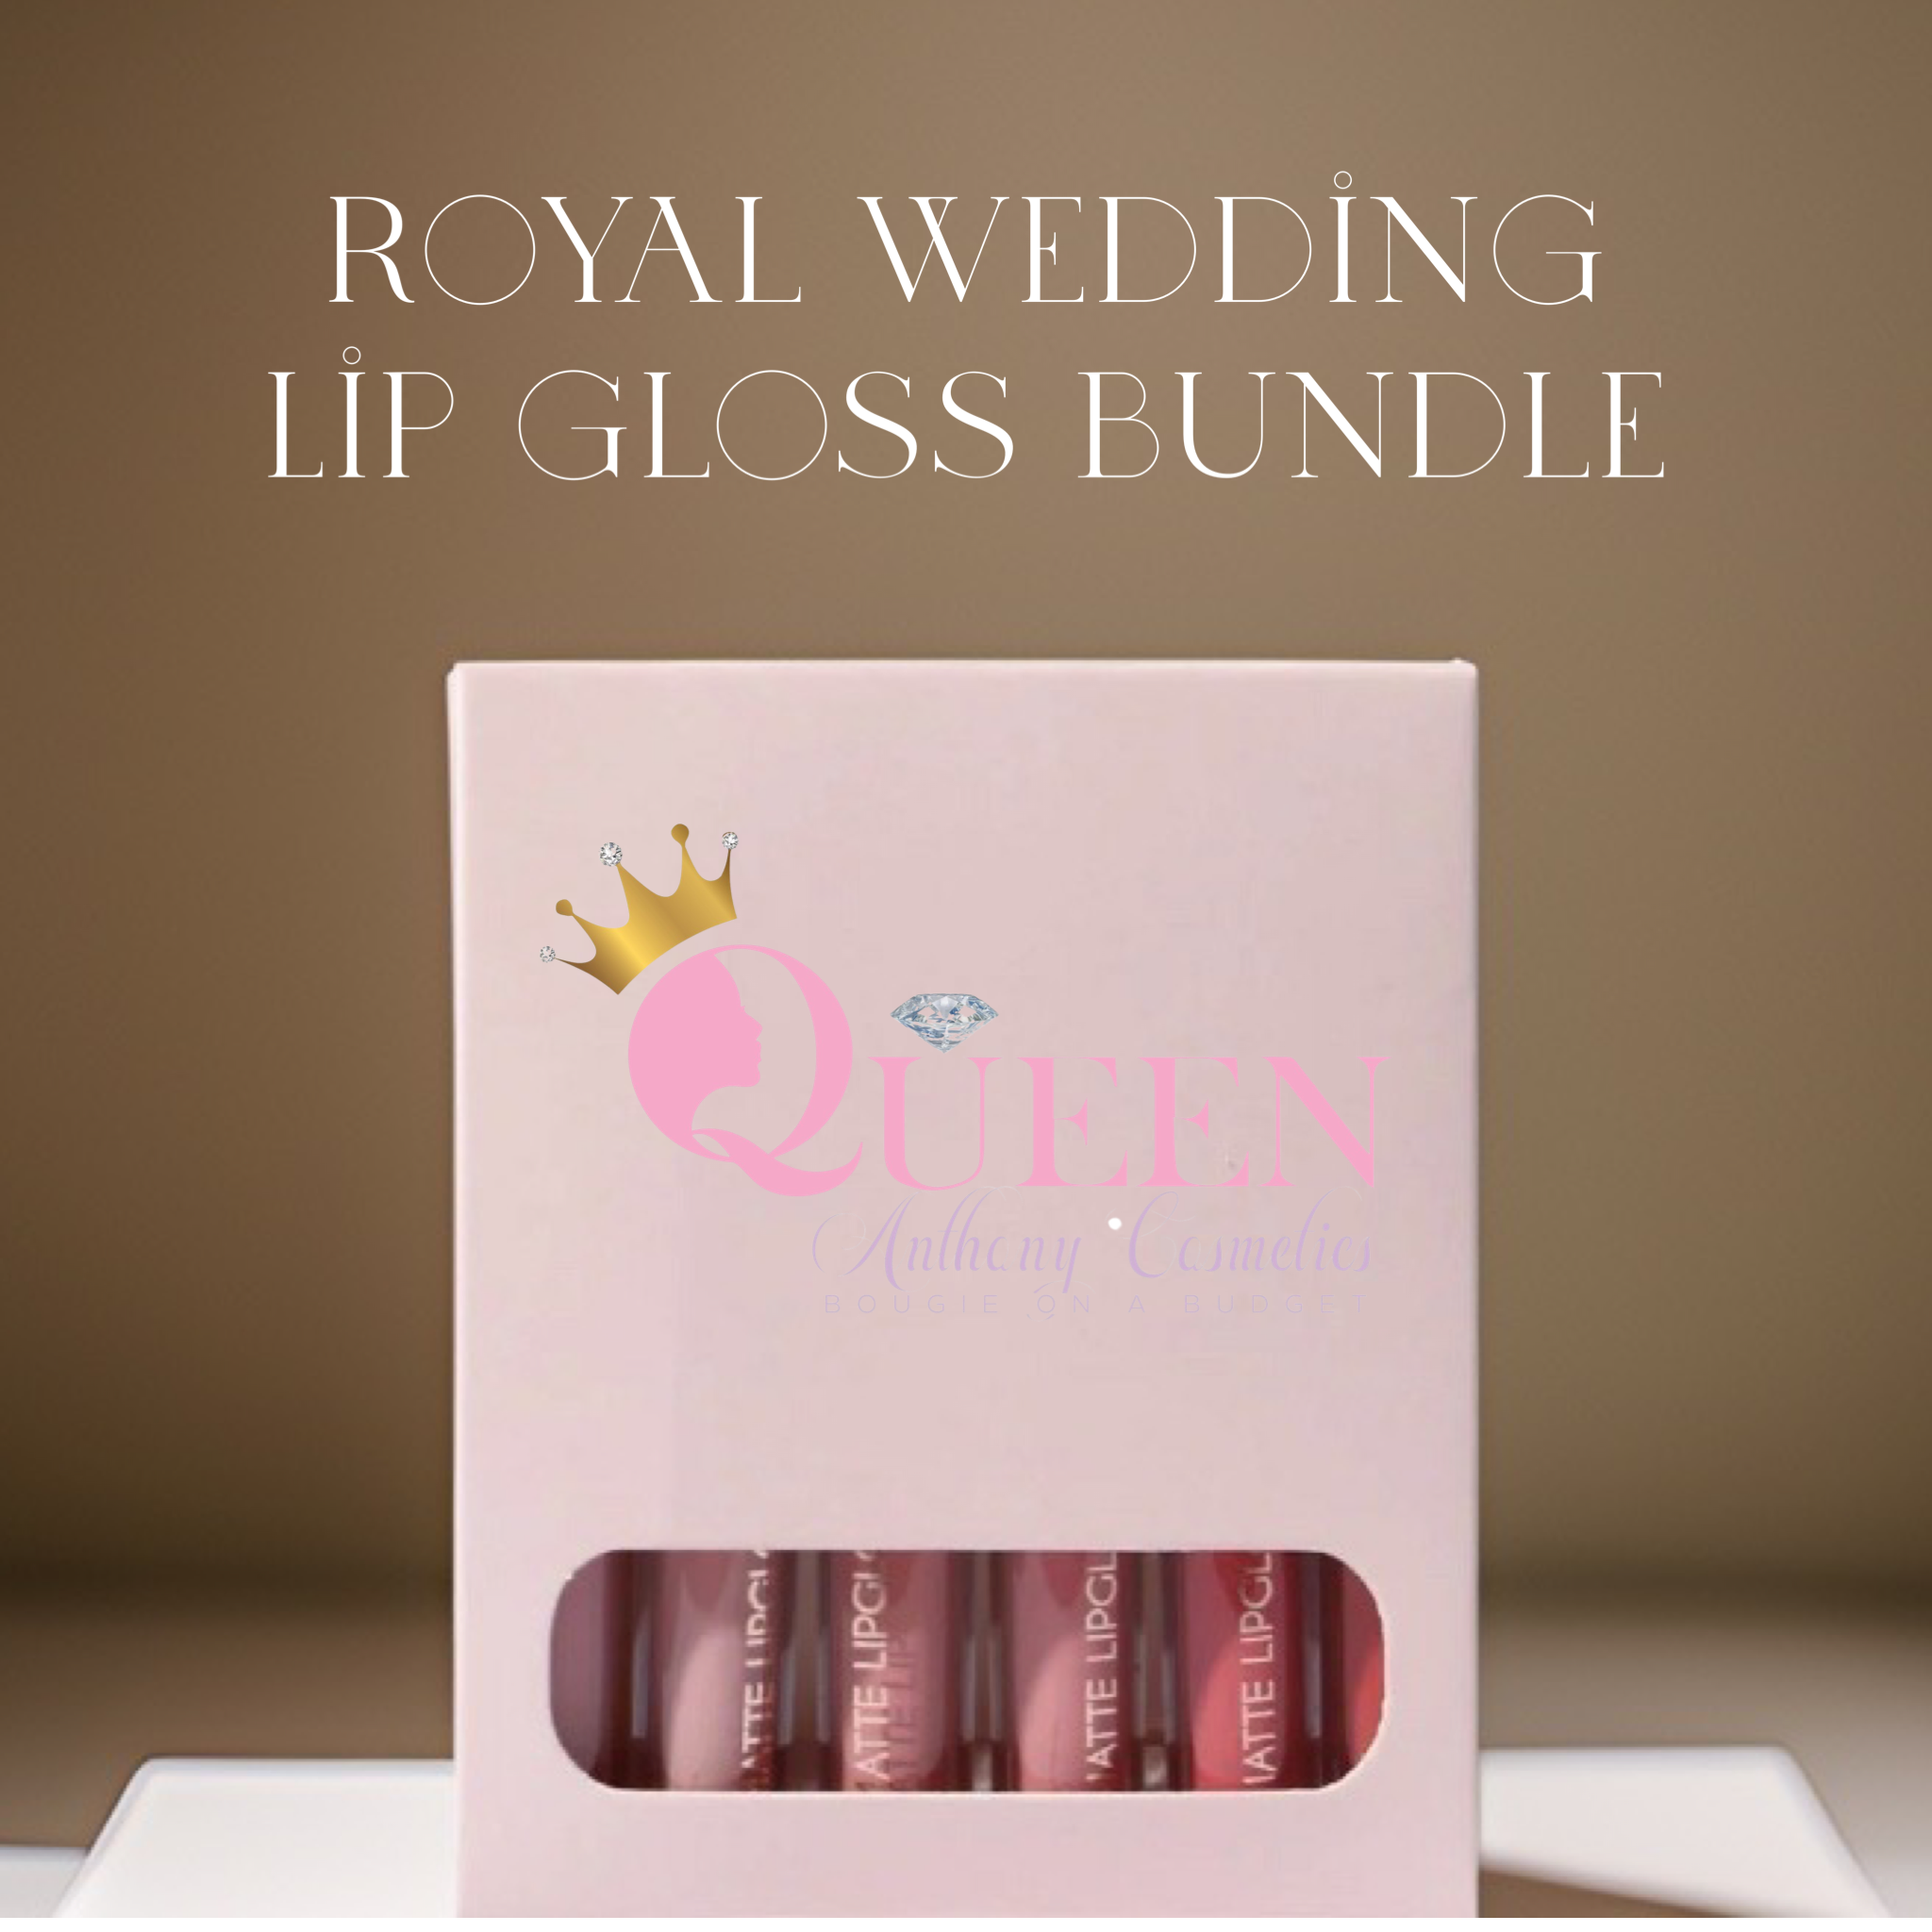 Royal wedding lip gloss bundle